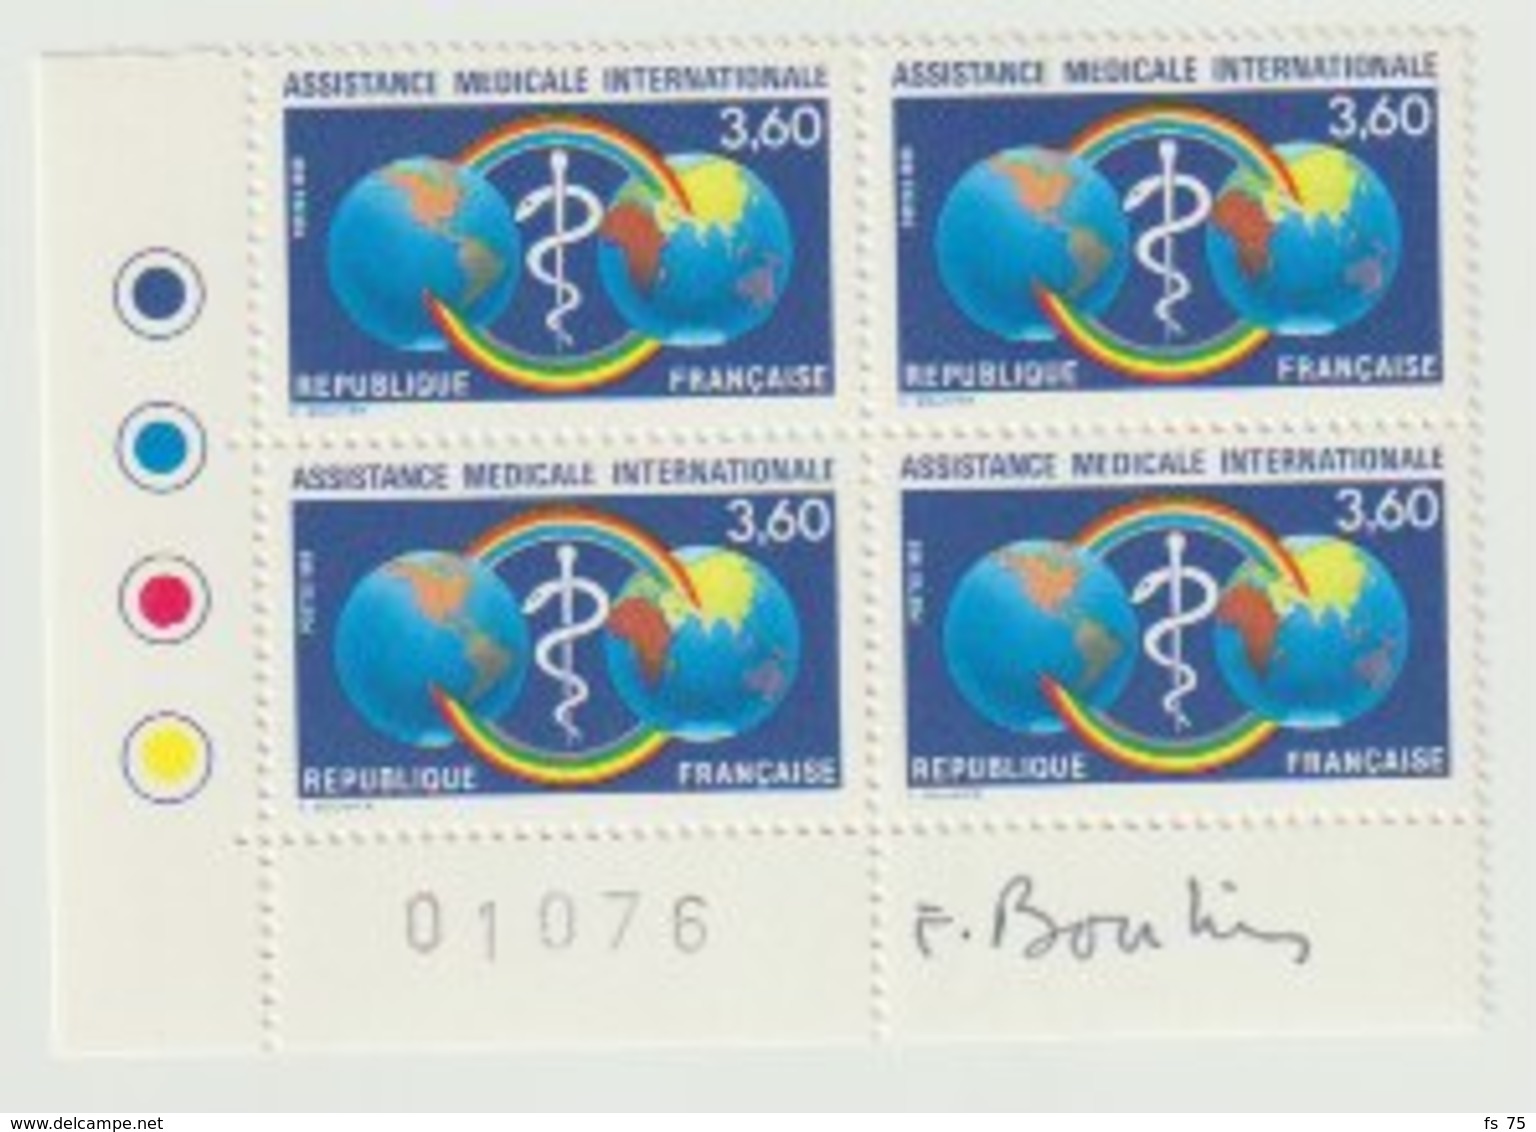 FRANCE - N°2535 - 3F60 - ASSISTANCE MEDICALE INTERNATIONALE - BLOC DE 4 - SIGNE BOUHIER - Unused Stamps